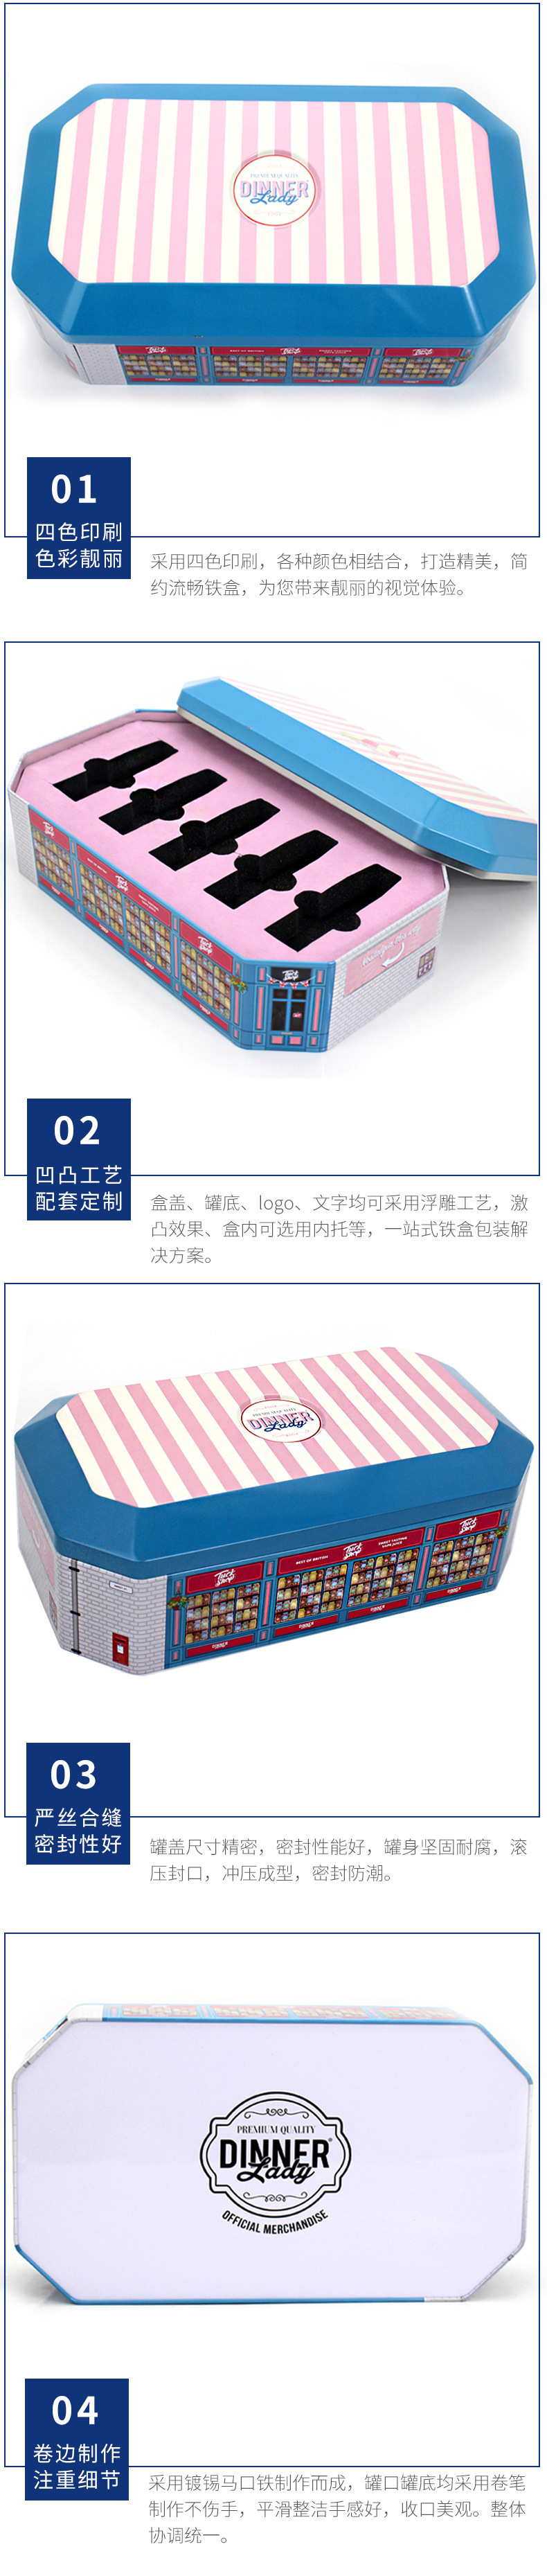 异形铁盒定制 即食燕窝包装盒 铁罐 八角保健品铁盒生产示例图16